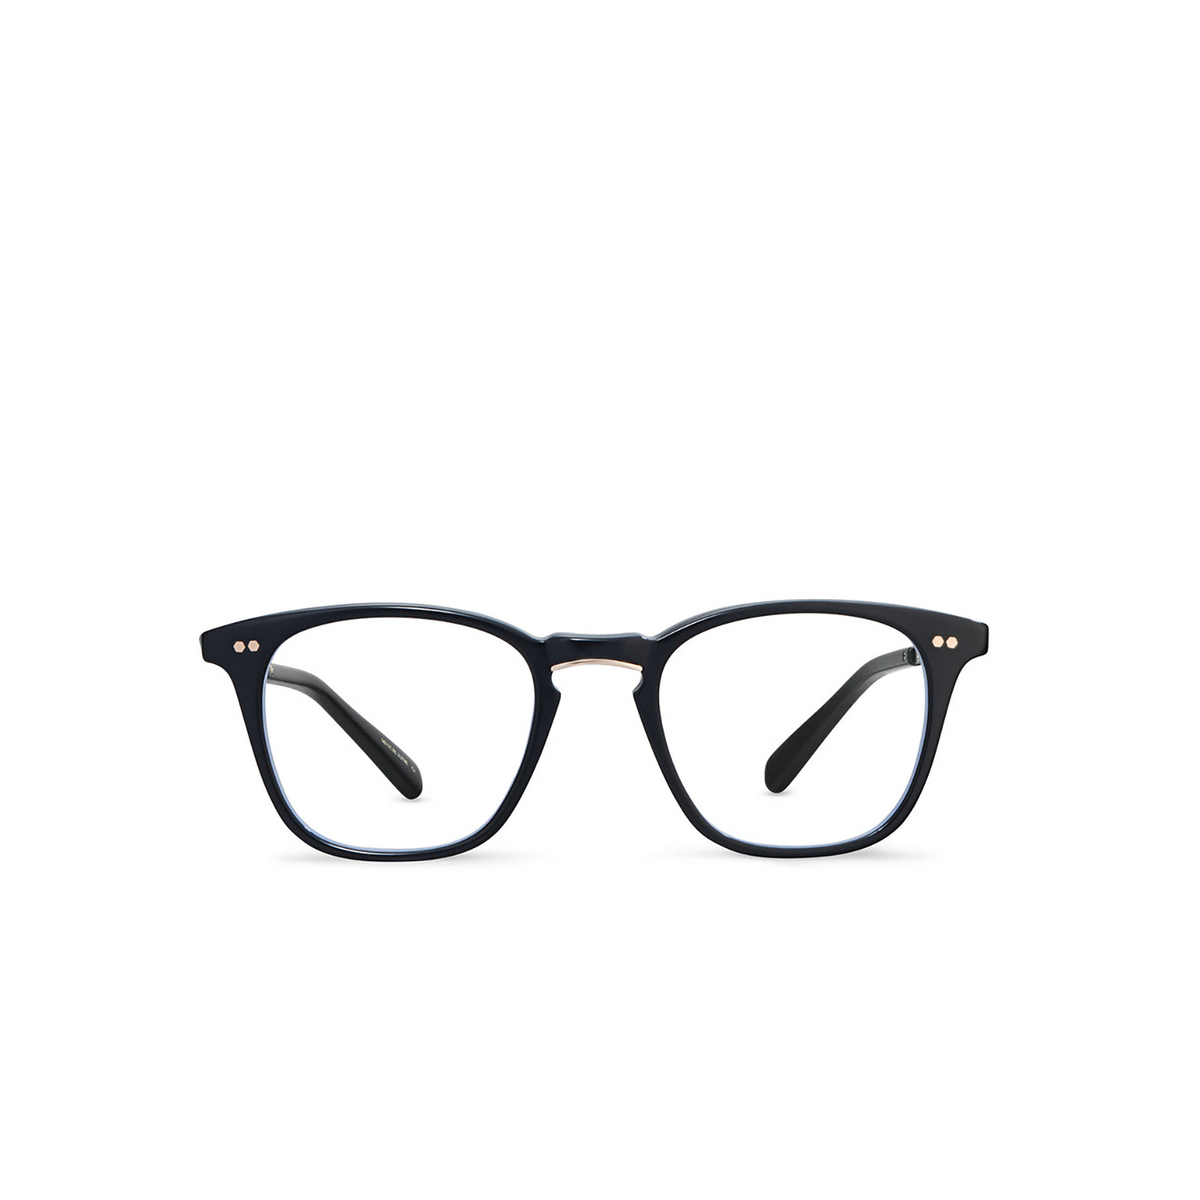 Mr. Leight GETTY C Eyeglasses BK-12KG Black-12K White Gold - 1/3